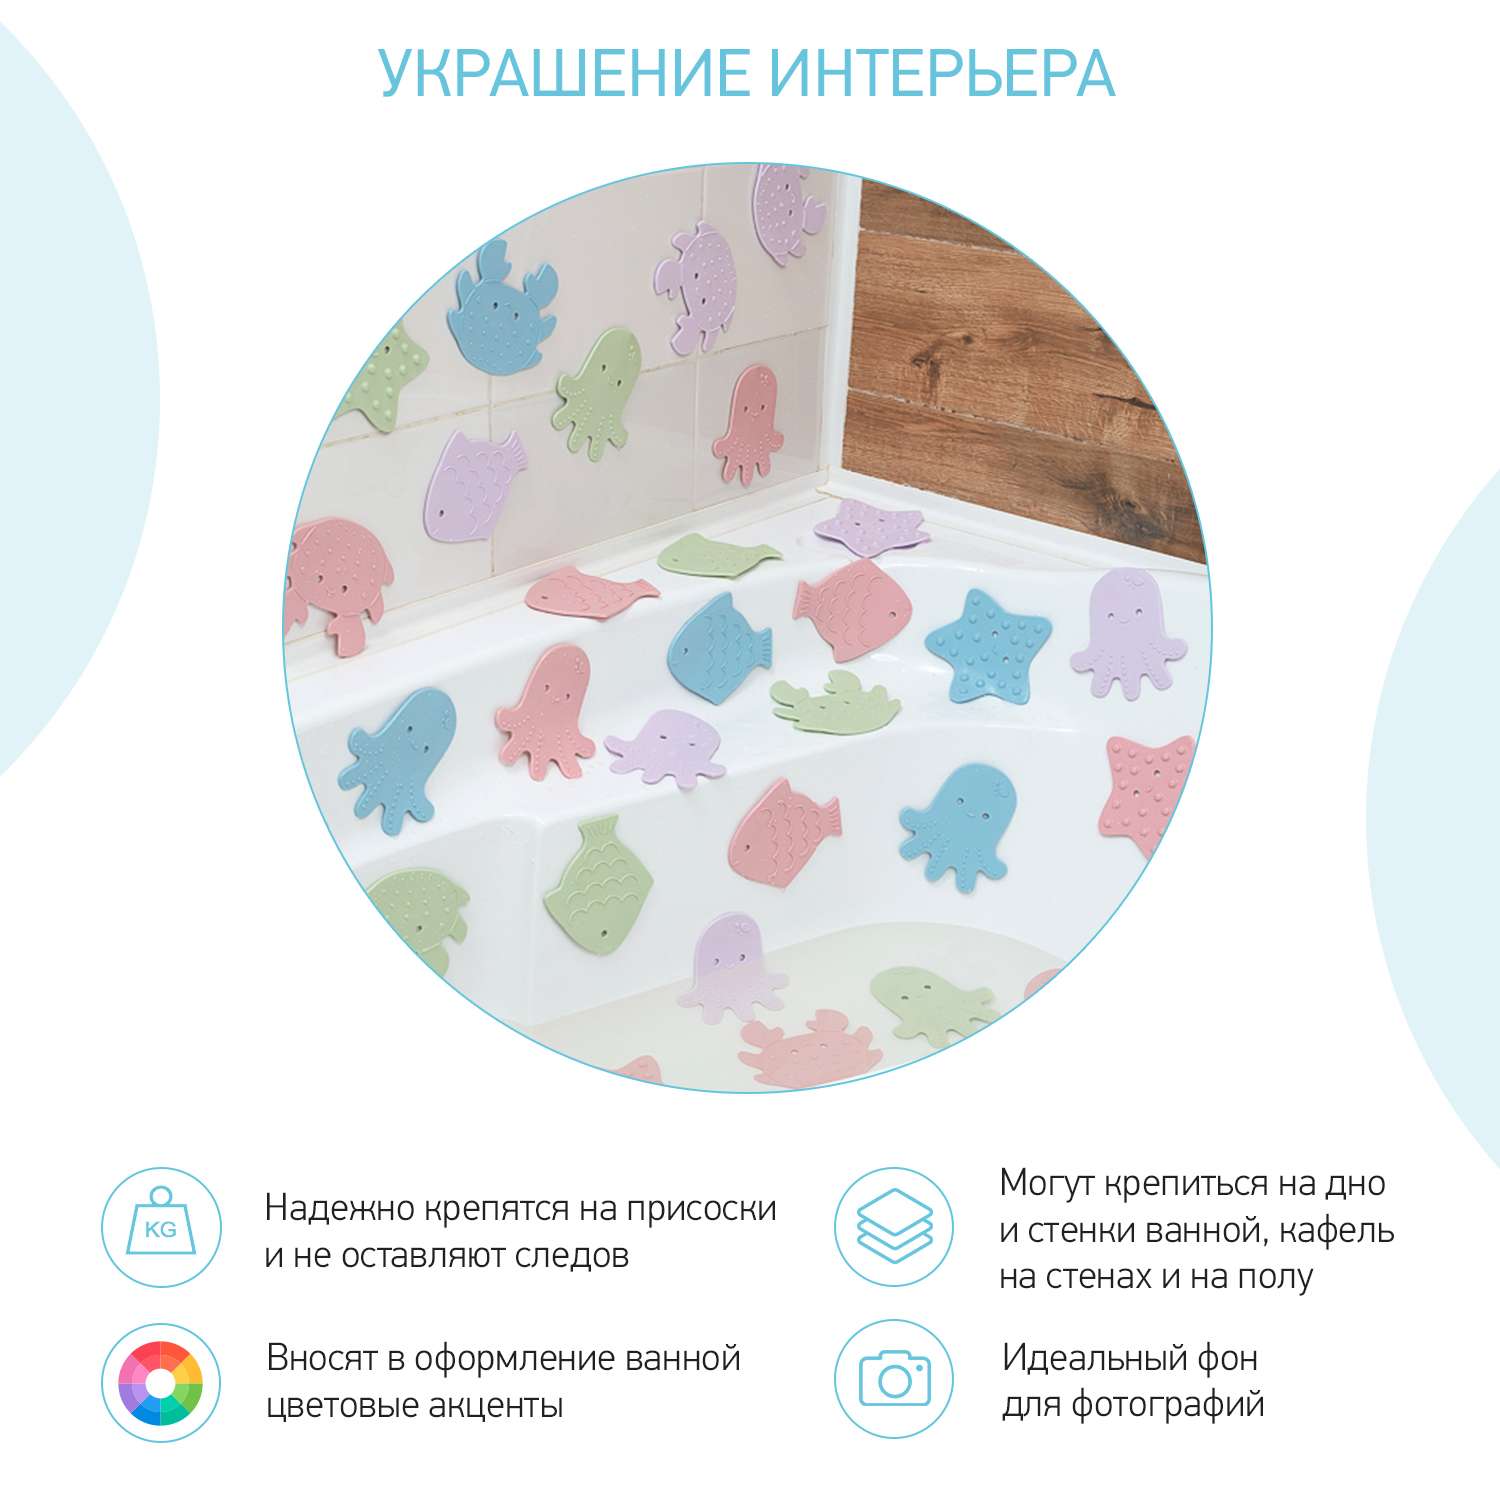 Мини-коврики детские ROXY-KIDS для ванной противоскользящие Sea animals 12 шт цвета в ассортименте - фото 8